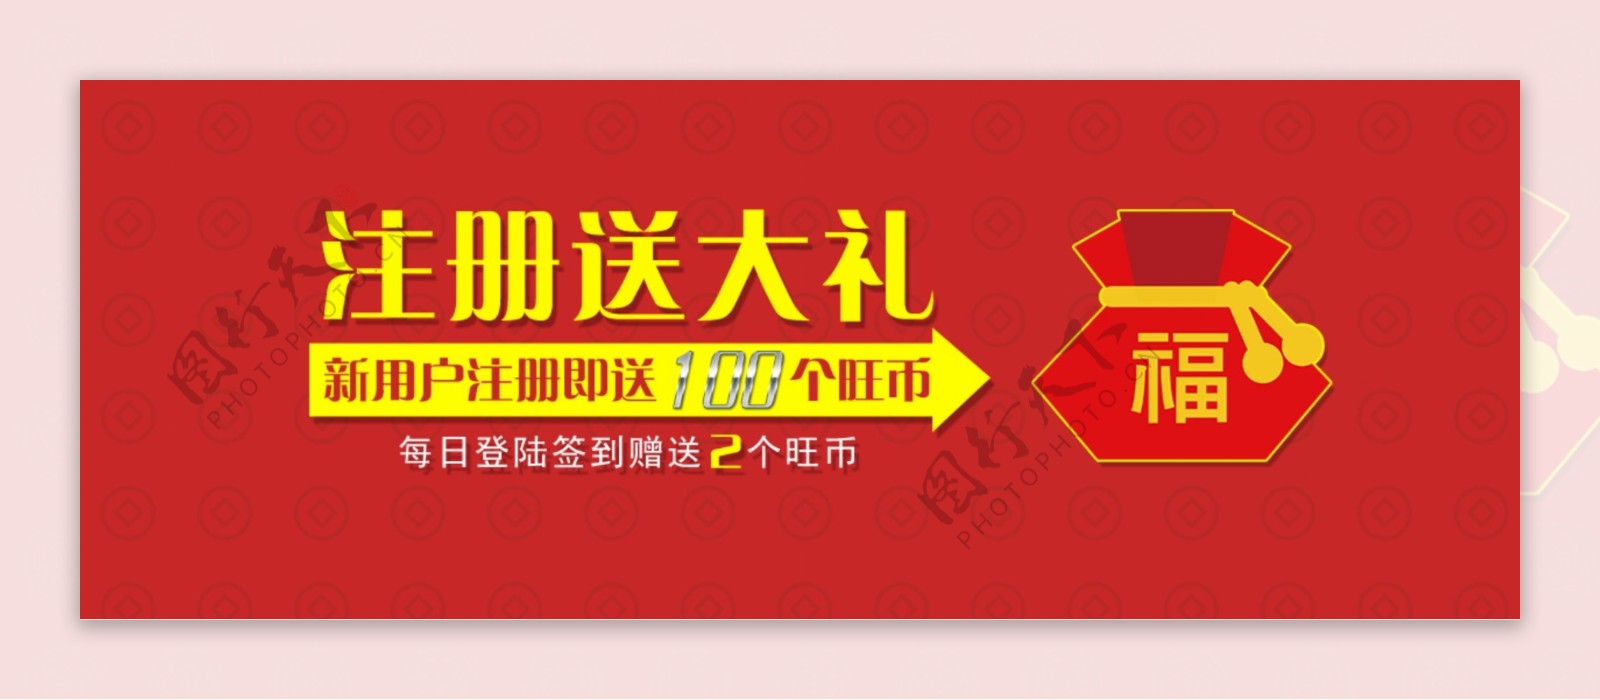 网站注册活动banner